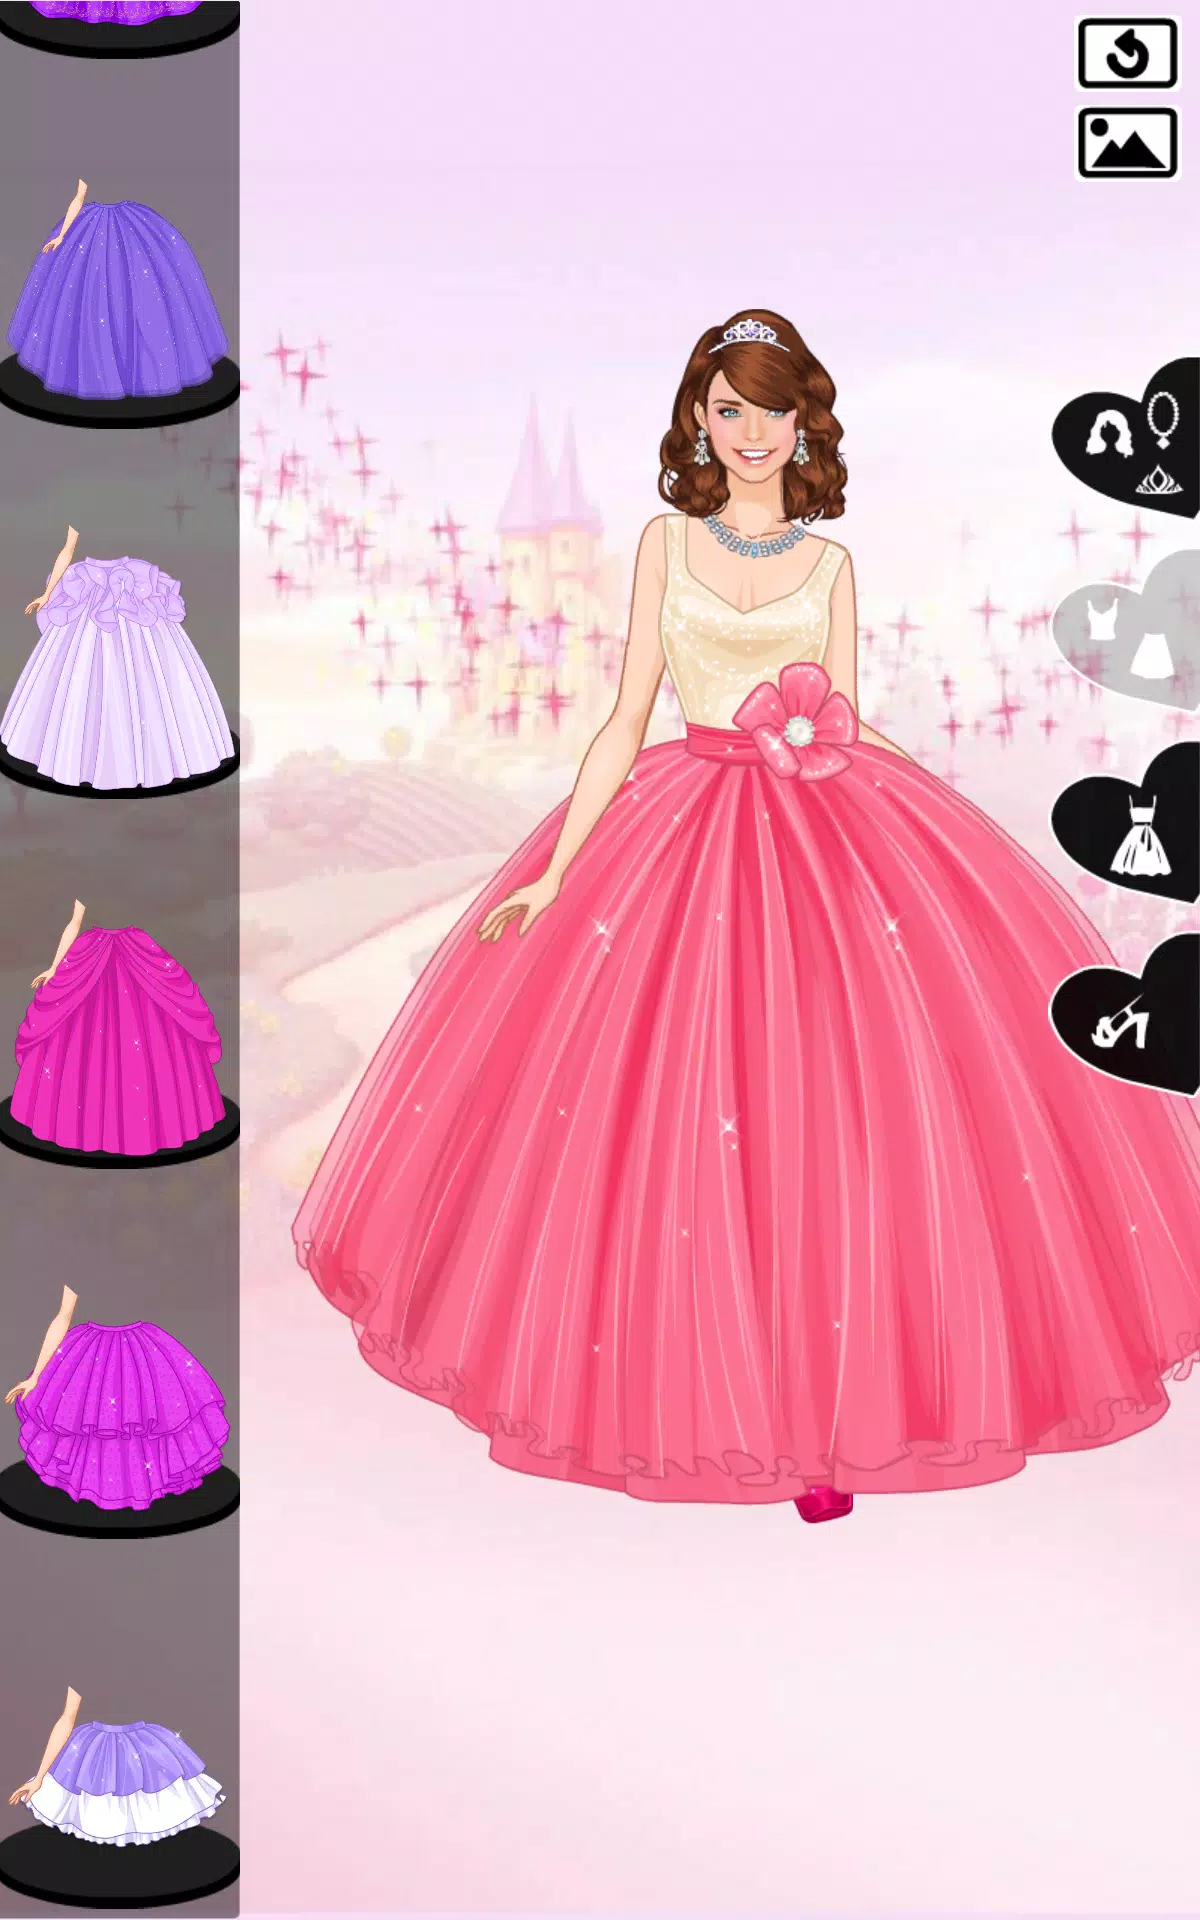 vestido de princesa roxa – Apps no Google Play